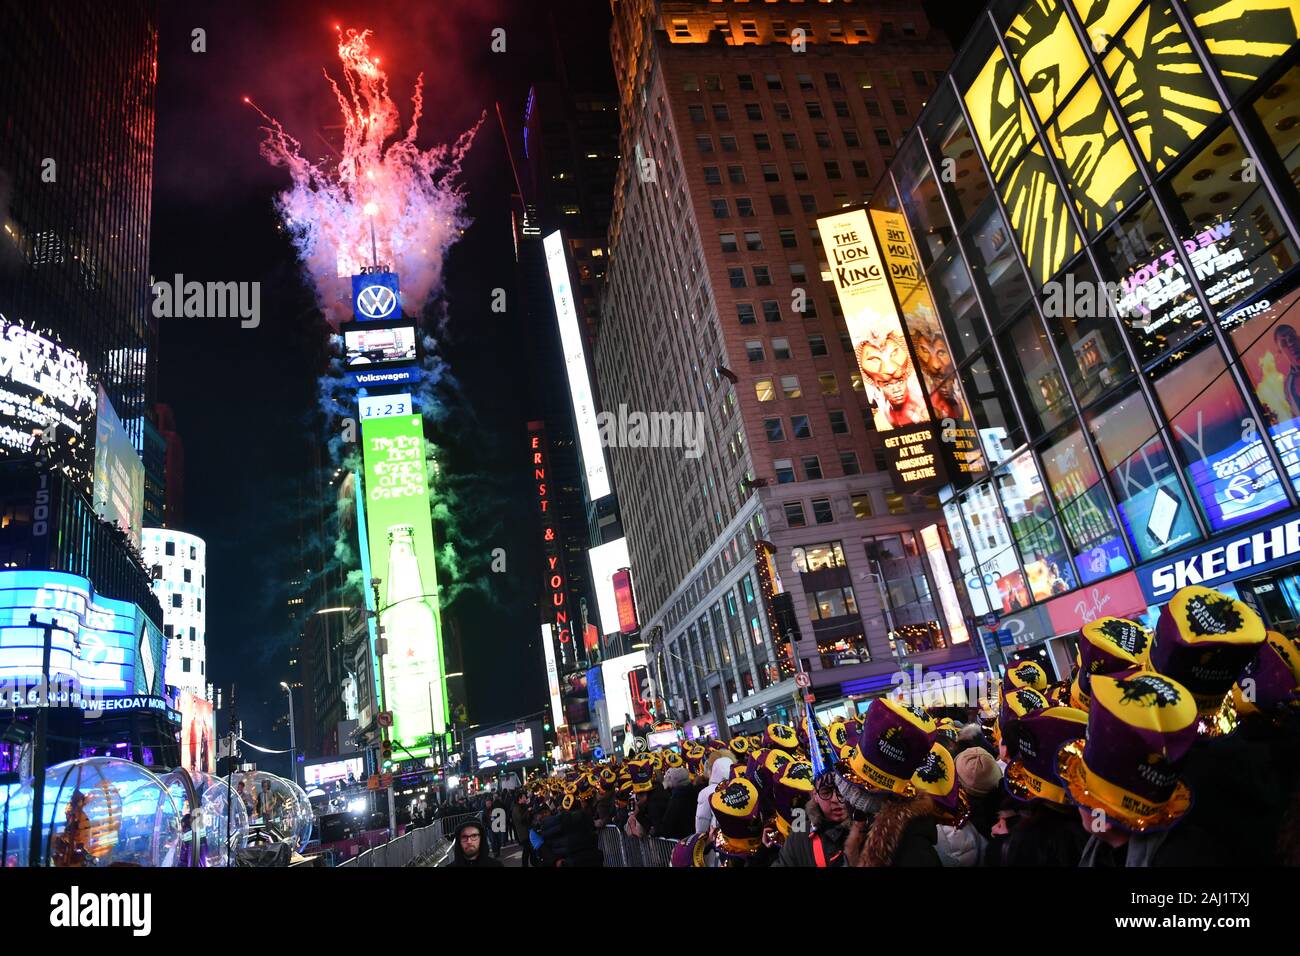 Silvester Nachtschwärmer während der Silvesterfeier am Times Square das  neue Jahr 2020 am 31. Dezember 2019 in New York City gesehen werden  Stockfotografie - Alamy